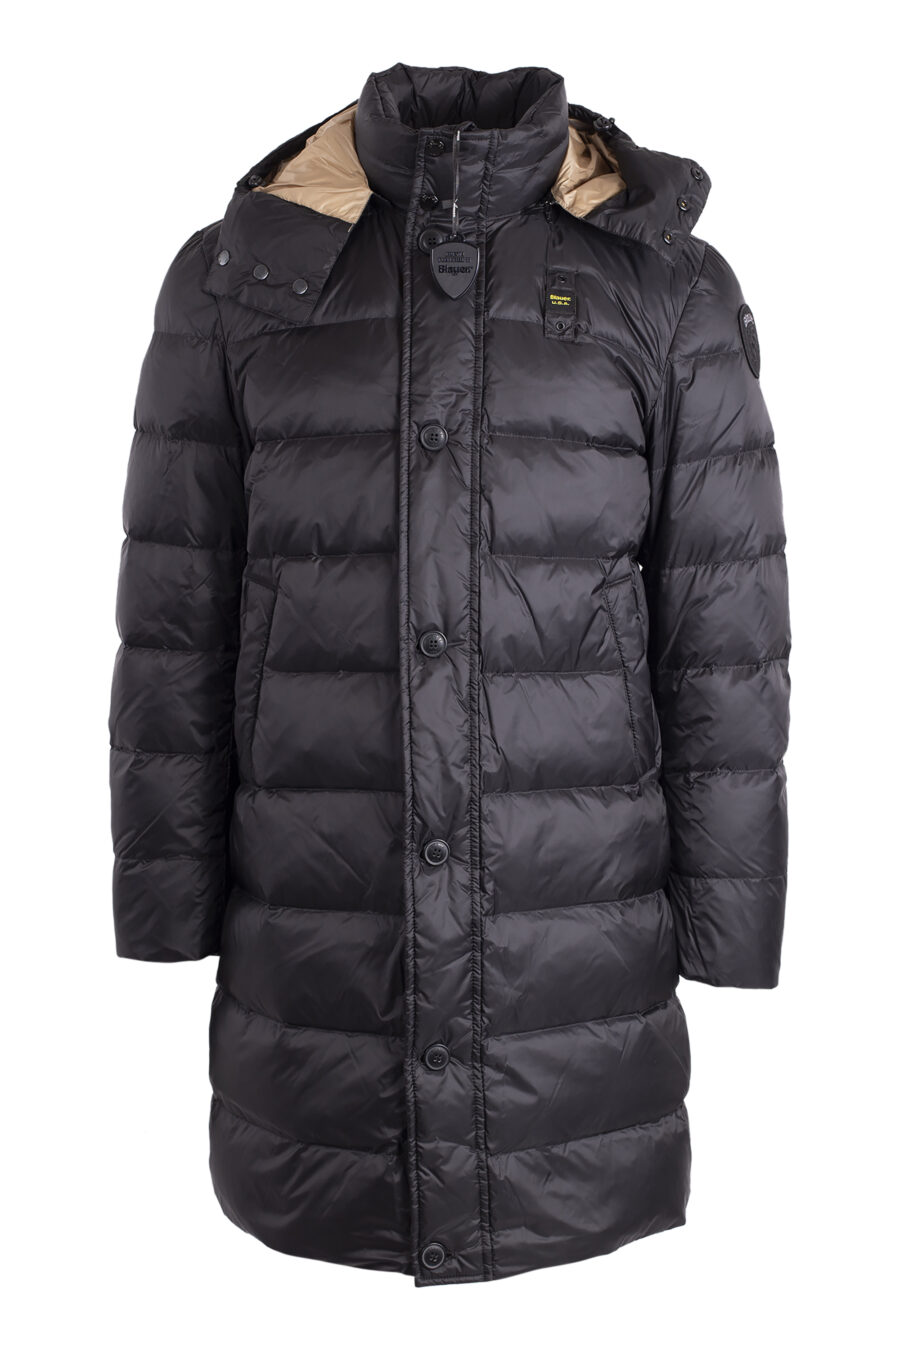 Long black waterproof hooded jacket with brown lining - IMG 4568